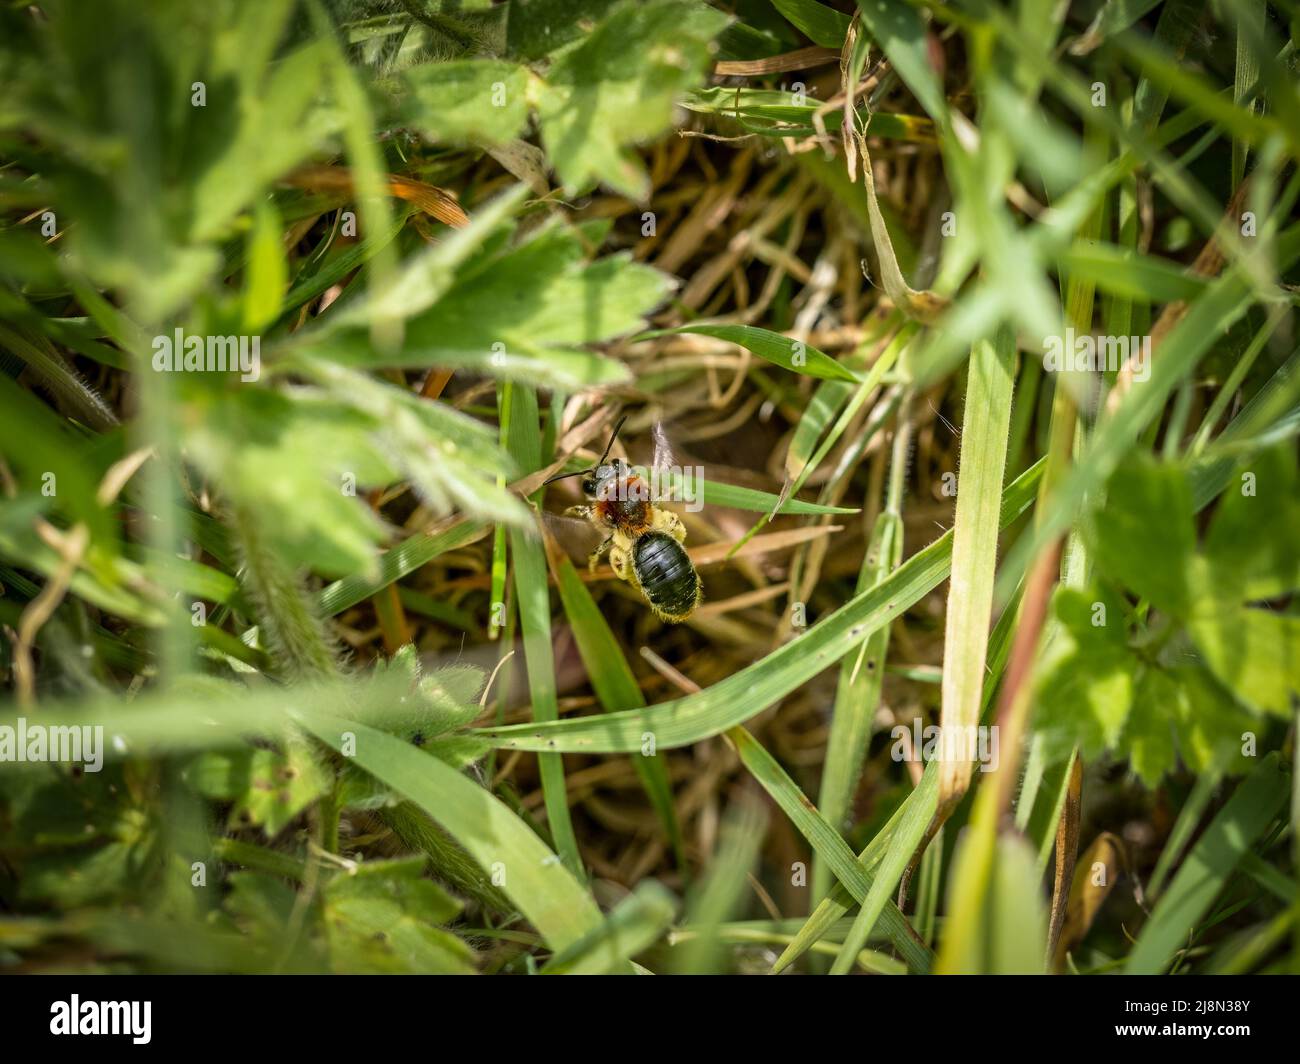 Nahaufnahme des farbenfrohen Weibchen der orangen Biene, Andrena haemorrhoe, die über das Nest fliegt. Stockfoto